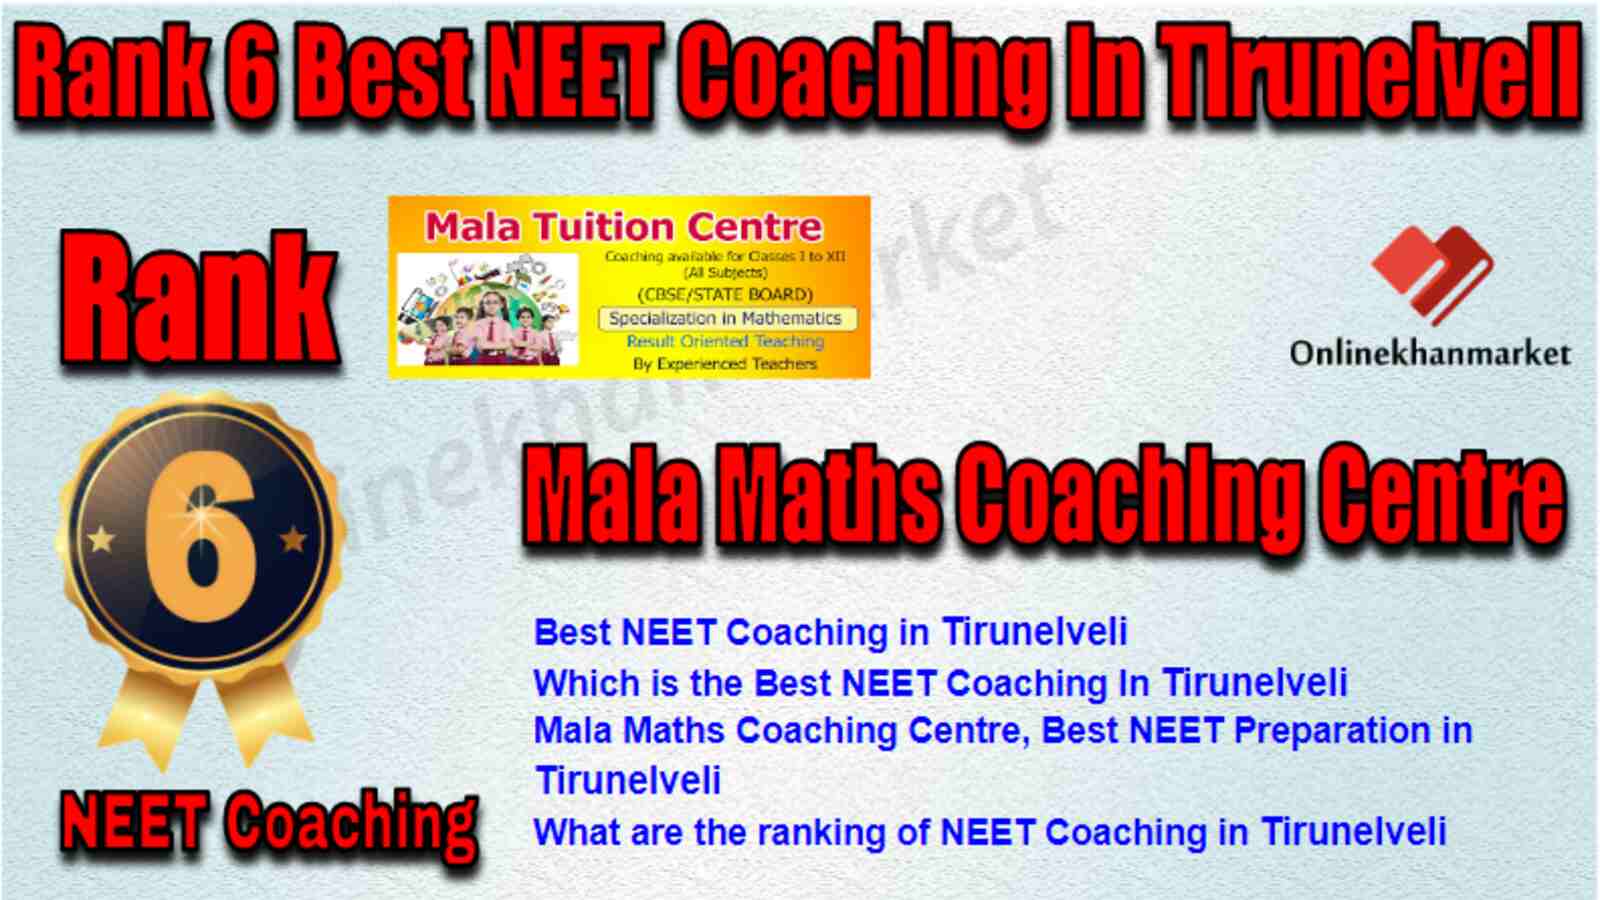 Rank 6 Best NEET Coaching in Tirunelveli